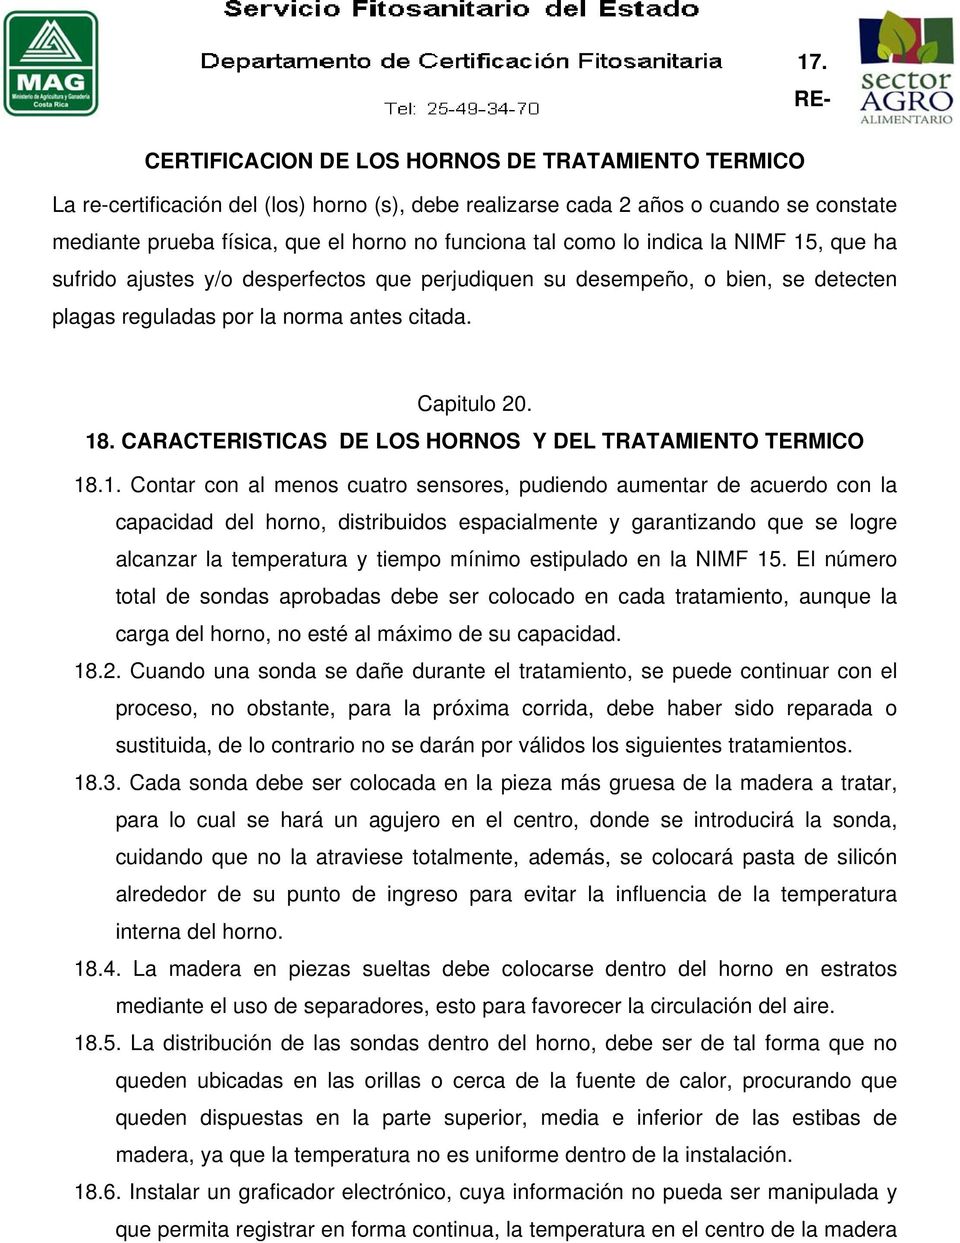 CARACTERISTICAS DE LOS HORNOS Y DEL TRATAMIENTO TERMICO 18